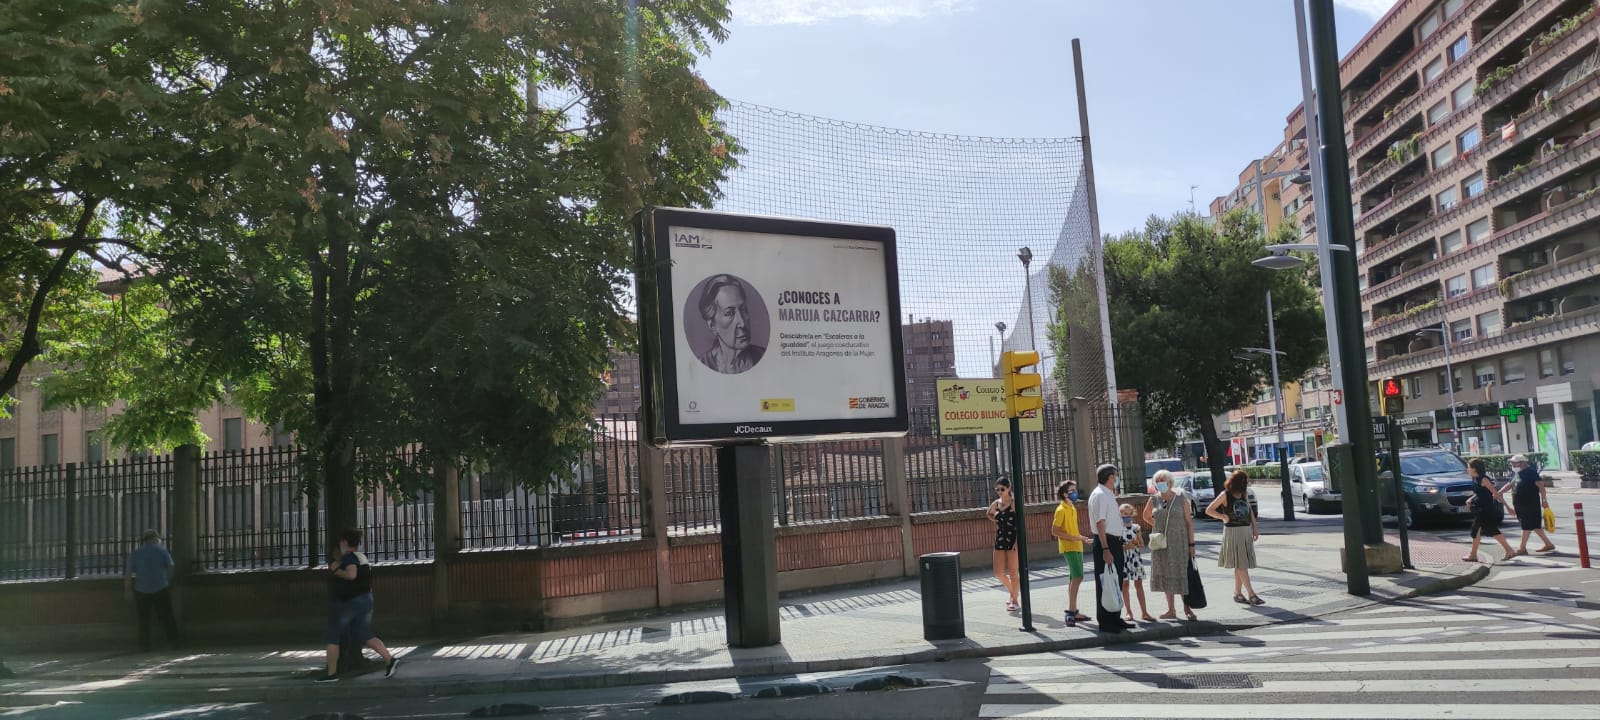 Mupi en Zaragoza de la campaña "Escaleras a la Igualdad" interpelando: ¿Conoces a Maruja Cazcarra?